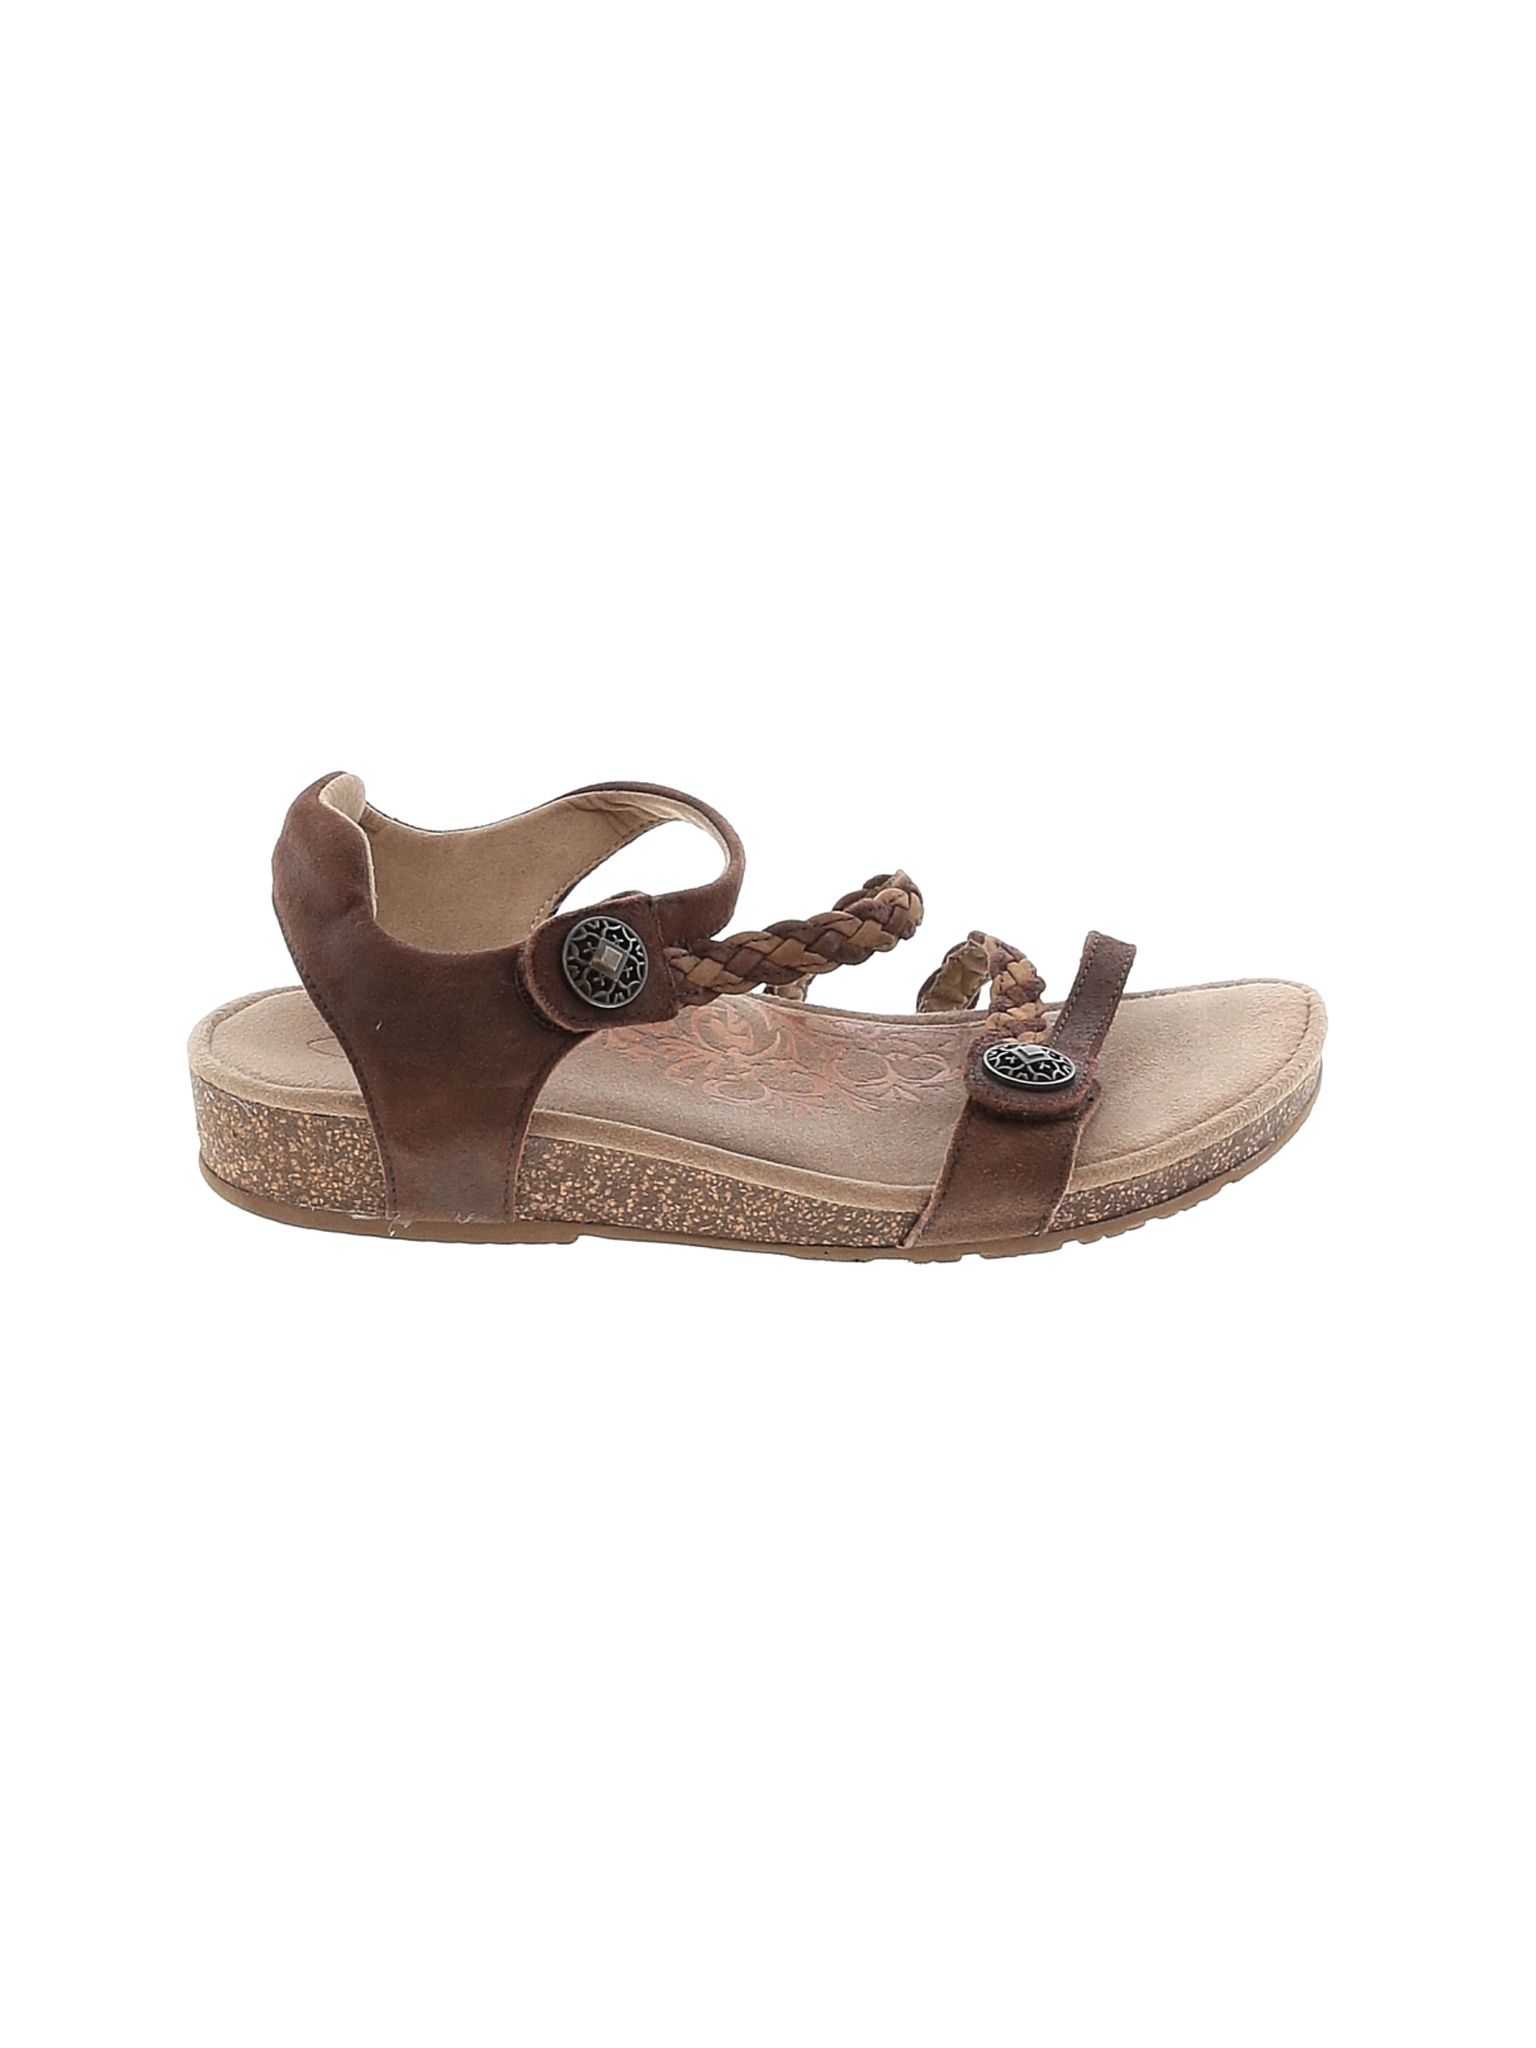 Aetrex Women Brown Sandals US 8 | eBay